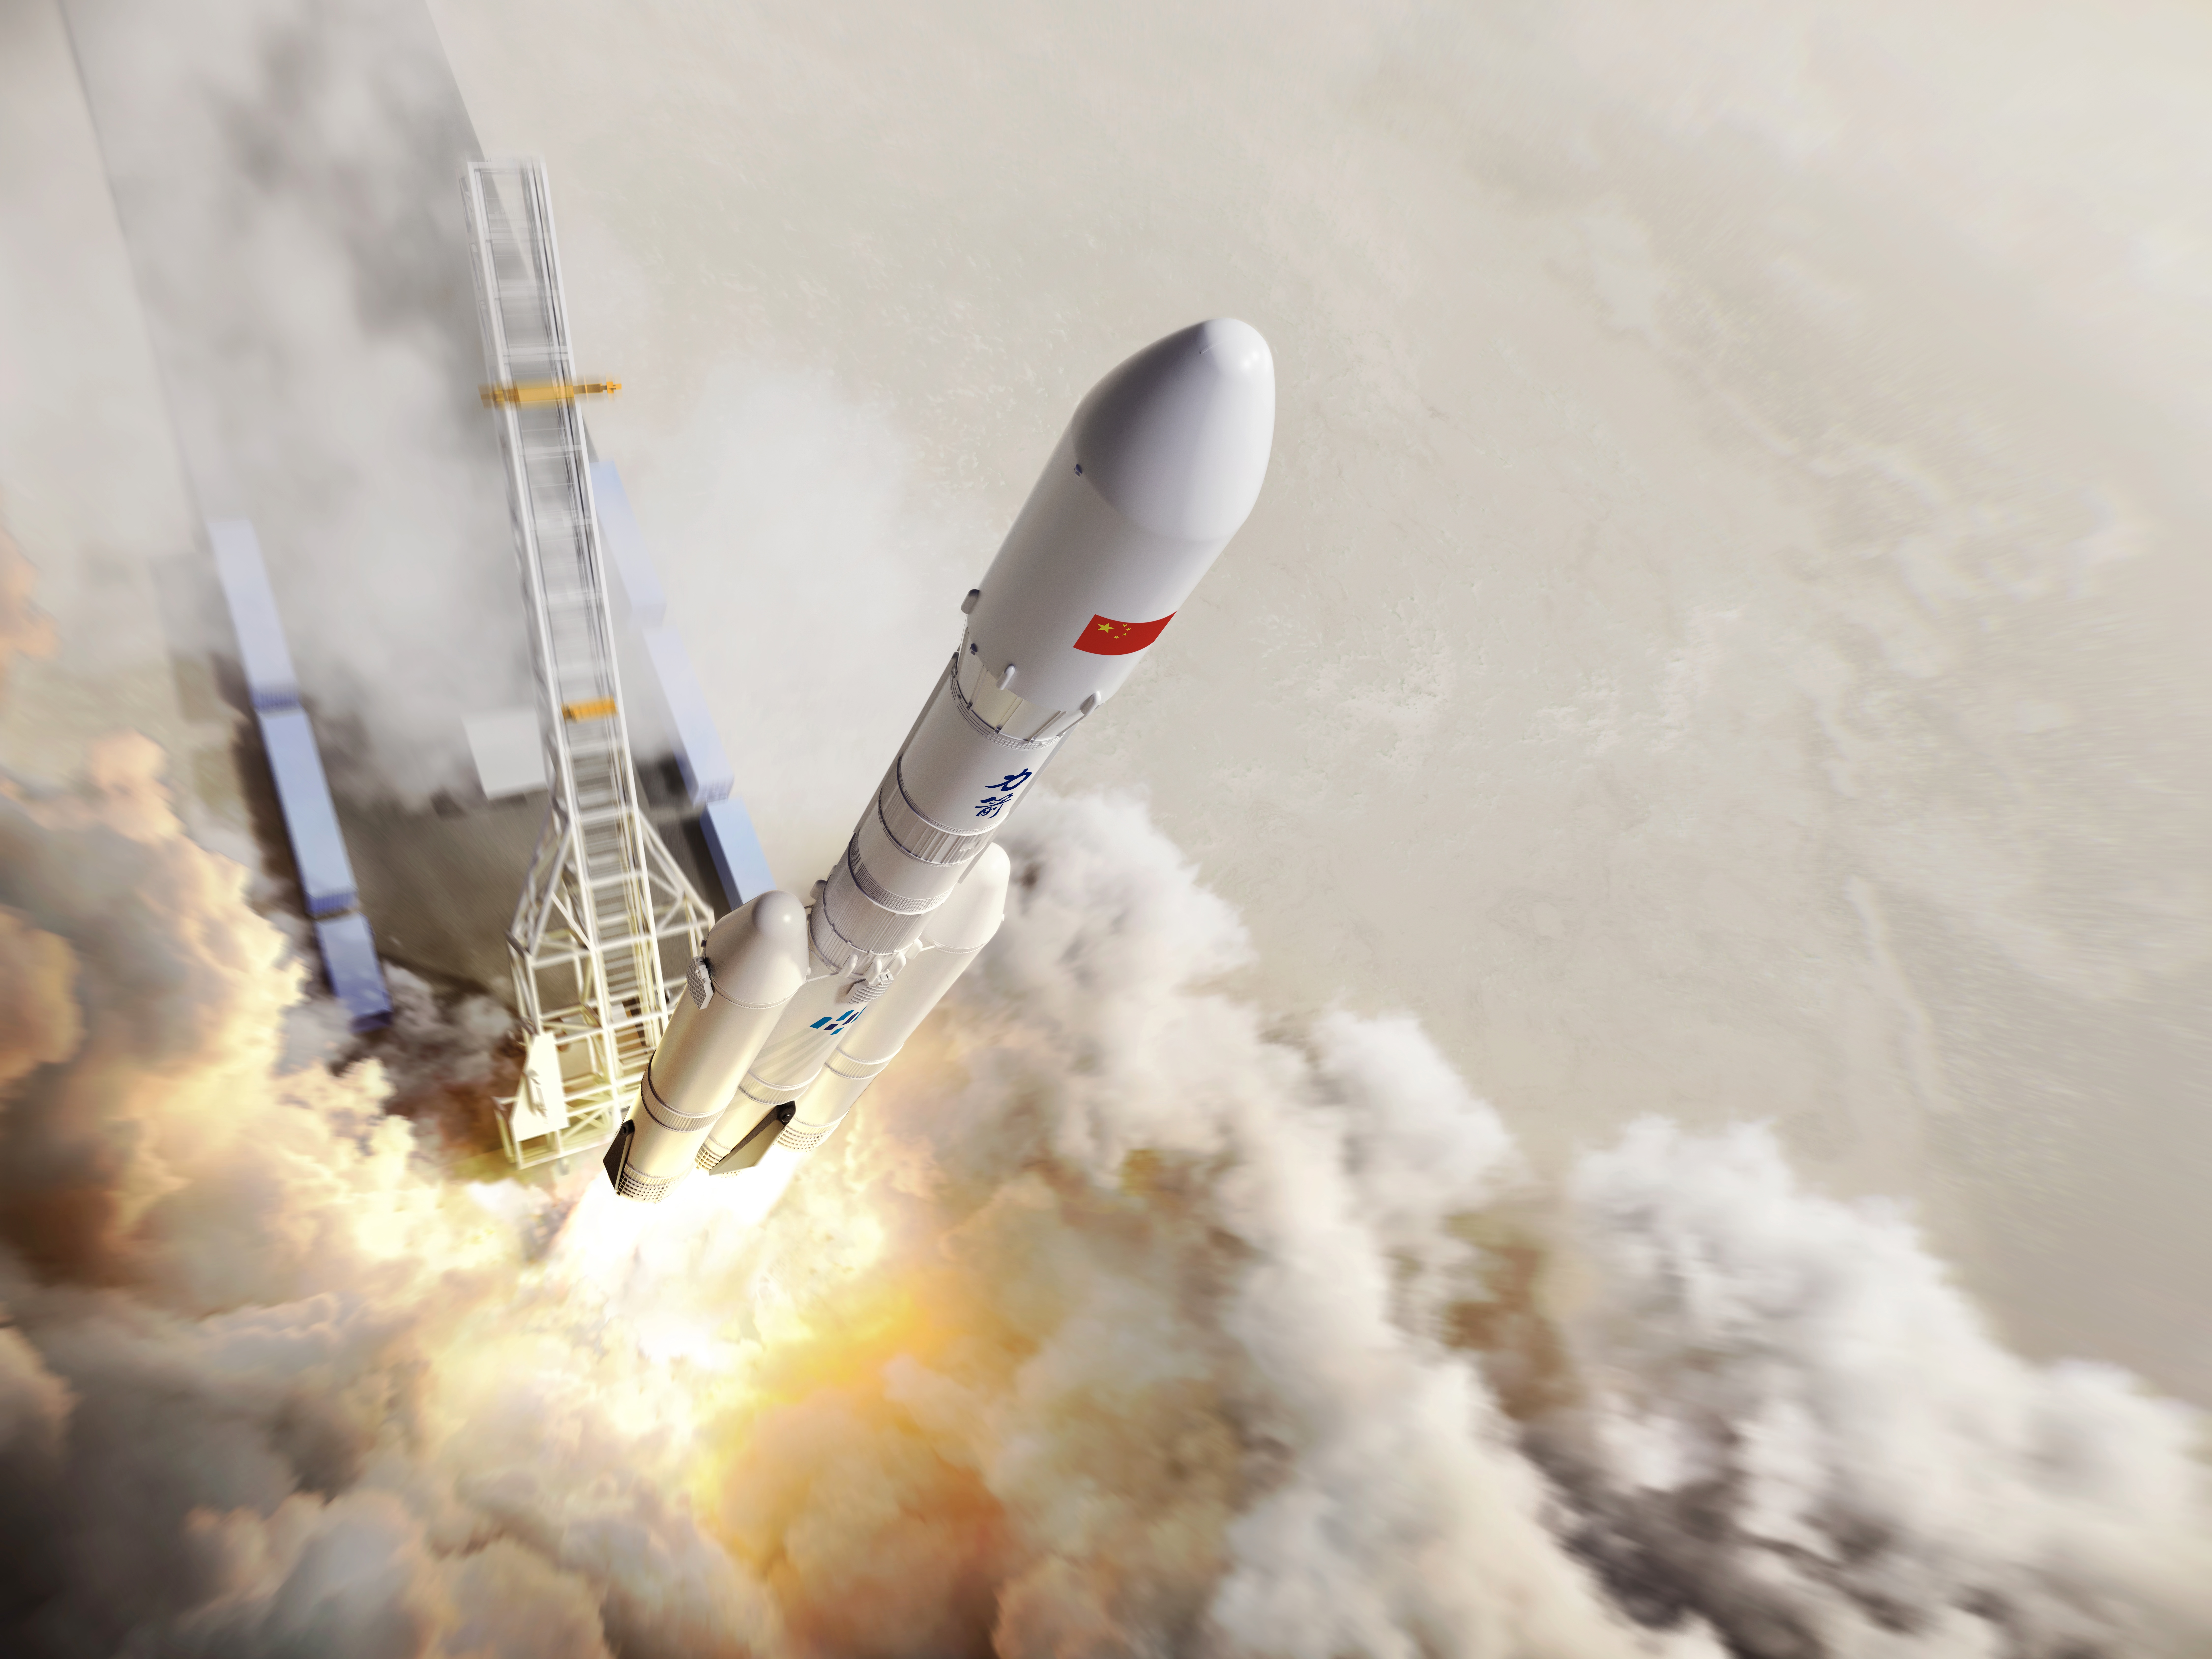 力箭二号火箭计划2025年首飞 将发射低成本货运飞船